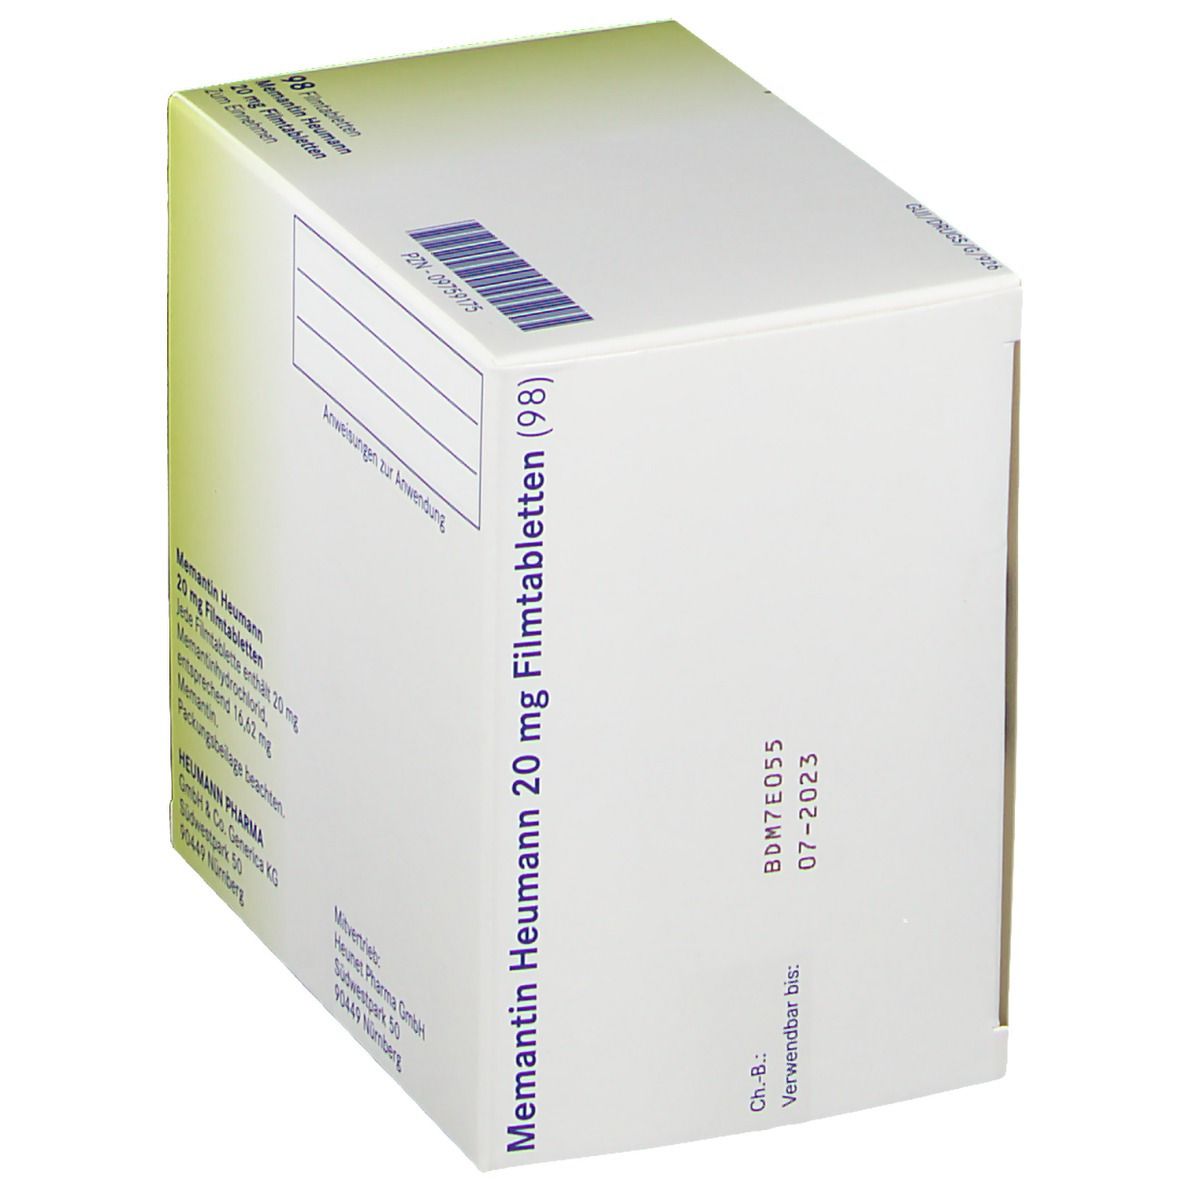 Memantin Heumann 20 mg